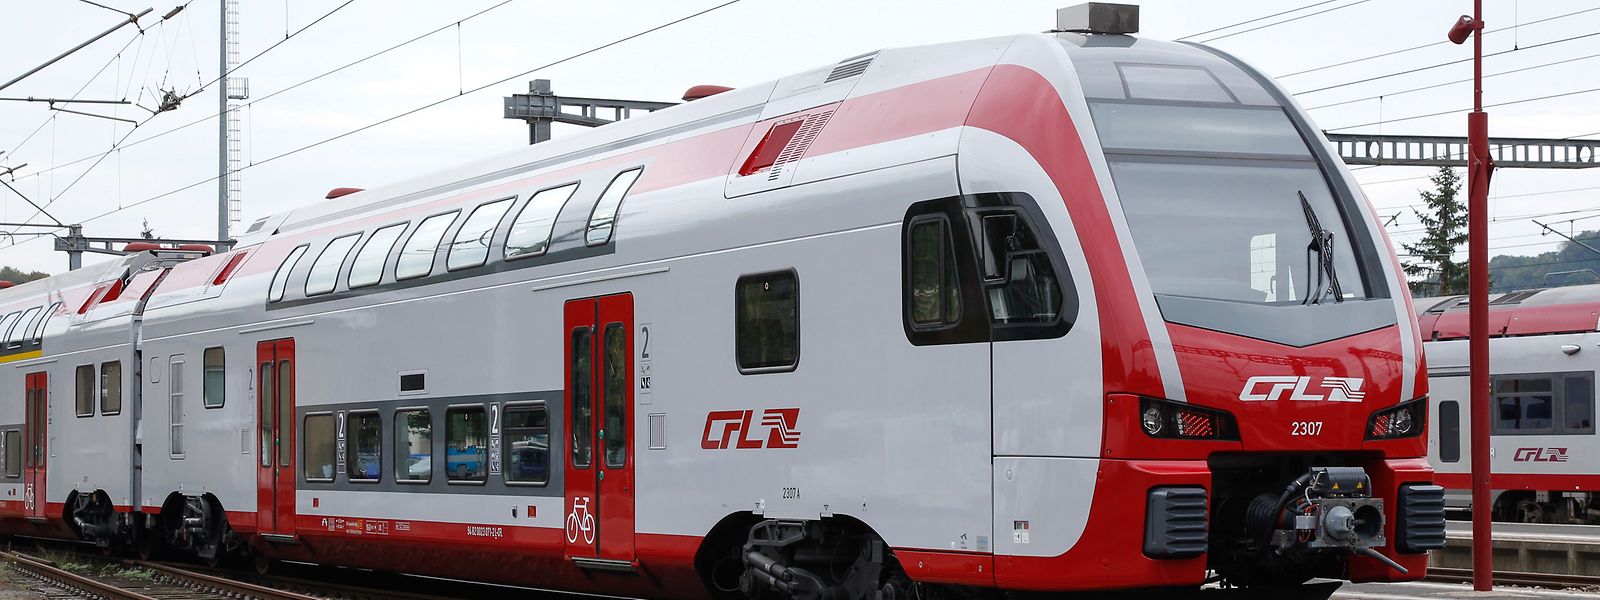 56% des trains de la ligne Luxembourg-Metz ont été supprimés en décembre